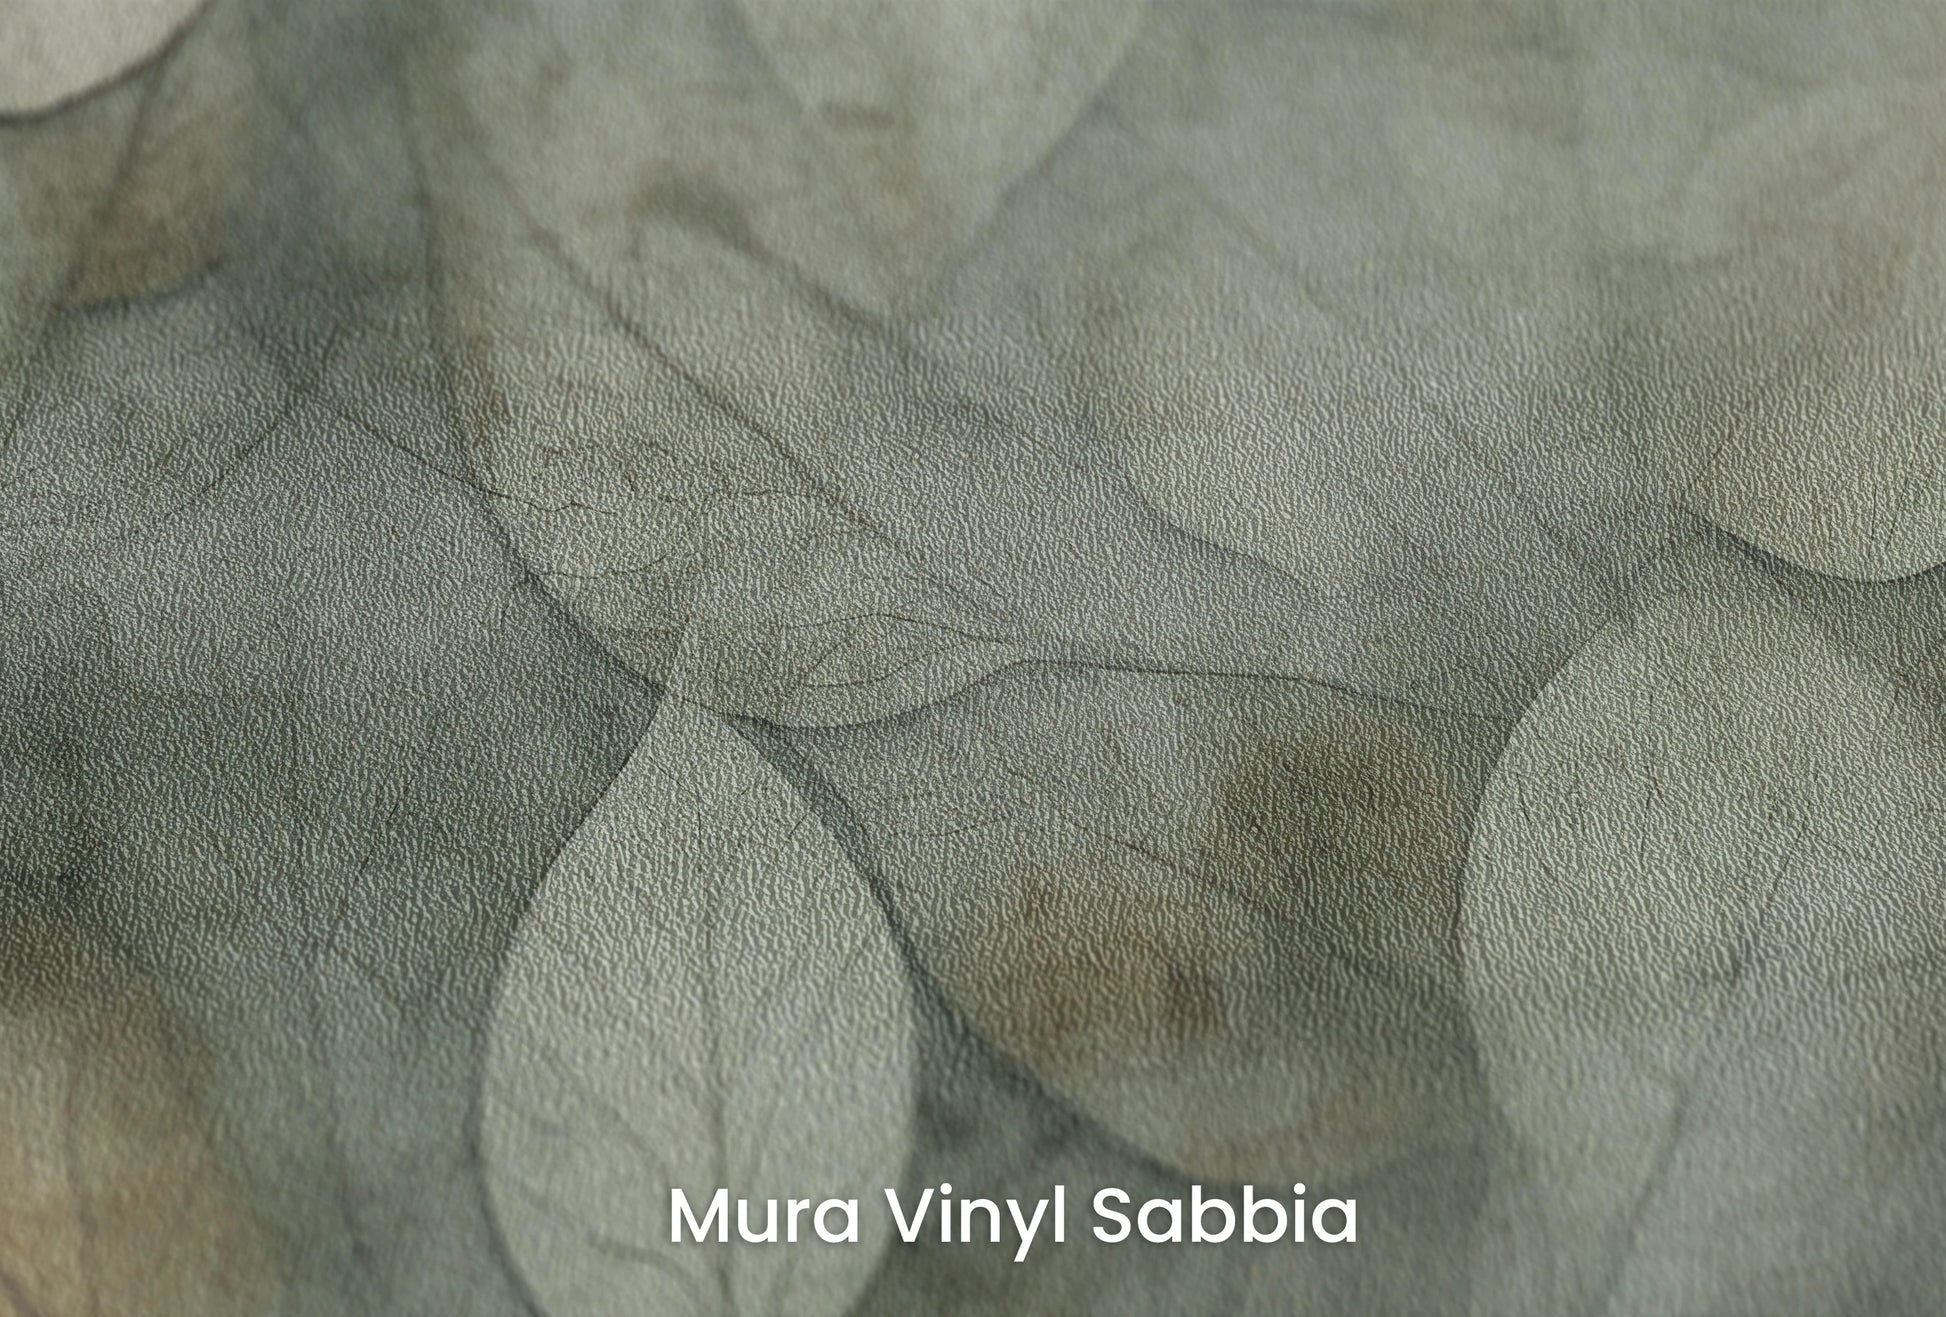 Zbliżenie na artystyczną fototapetę o nazwie Ethereal Foliage na podłożu Mura Vinyl Sabbia struktura grubego ziarna piasku.